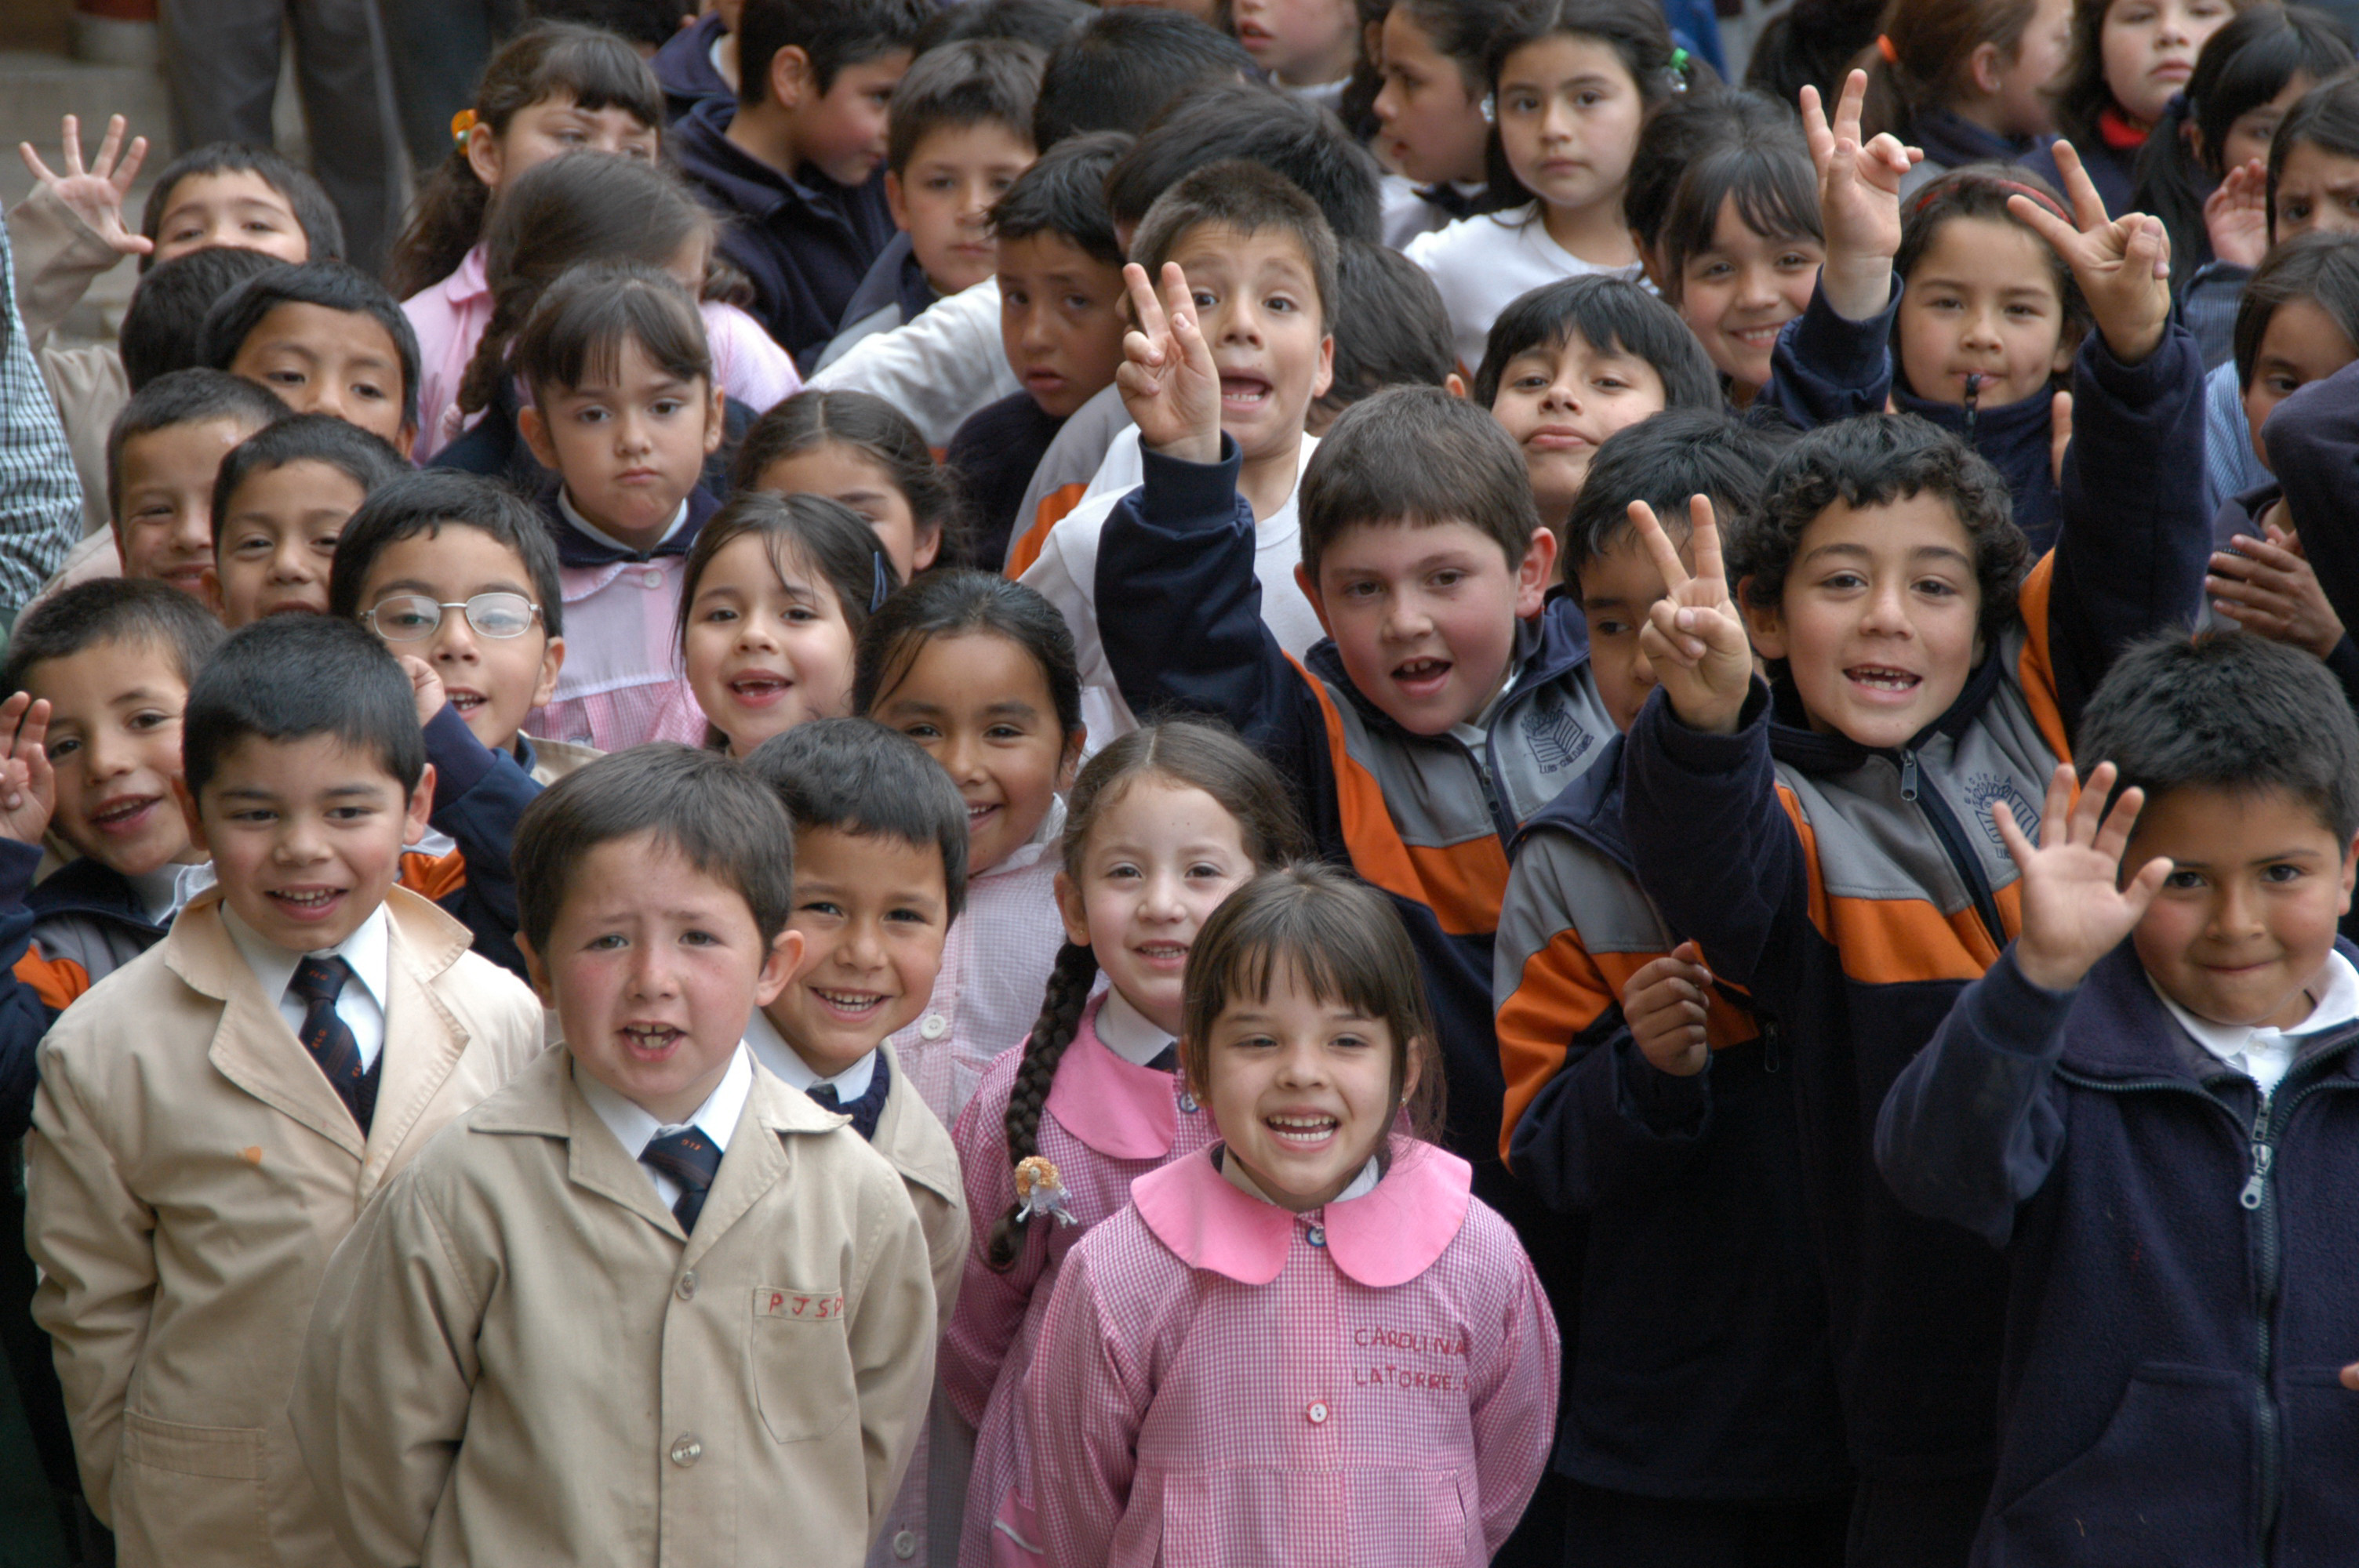 Imagen de varios alumnos de educación básica sonriendo.